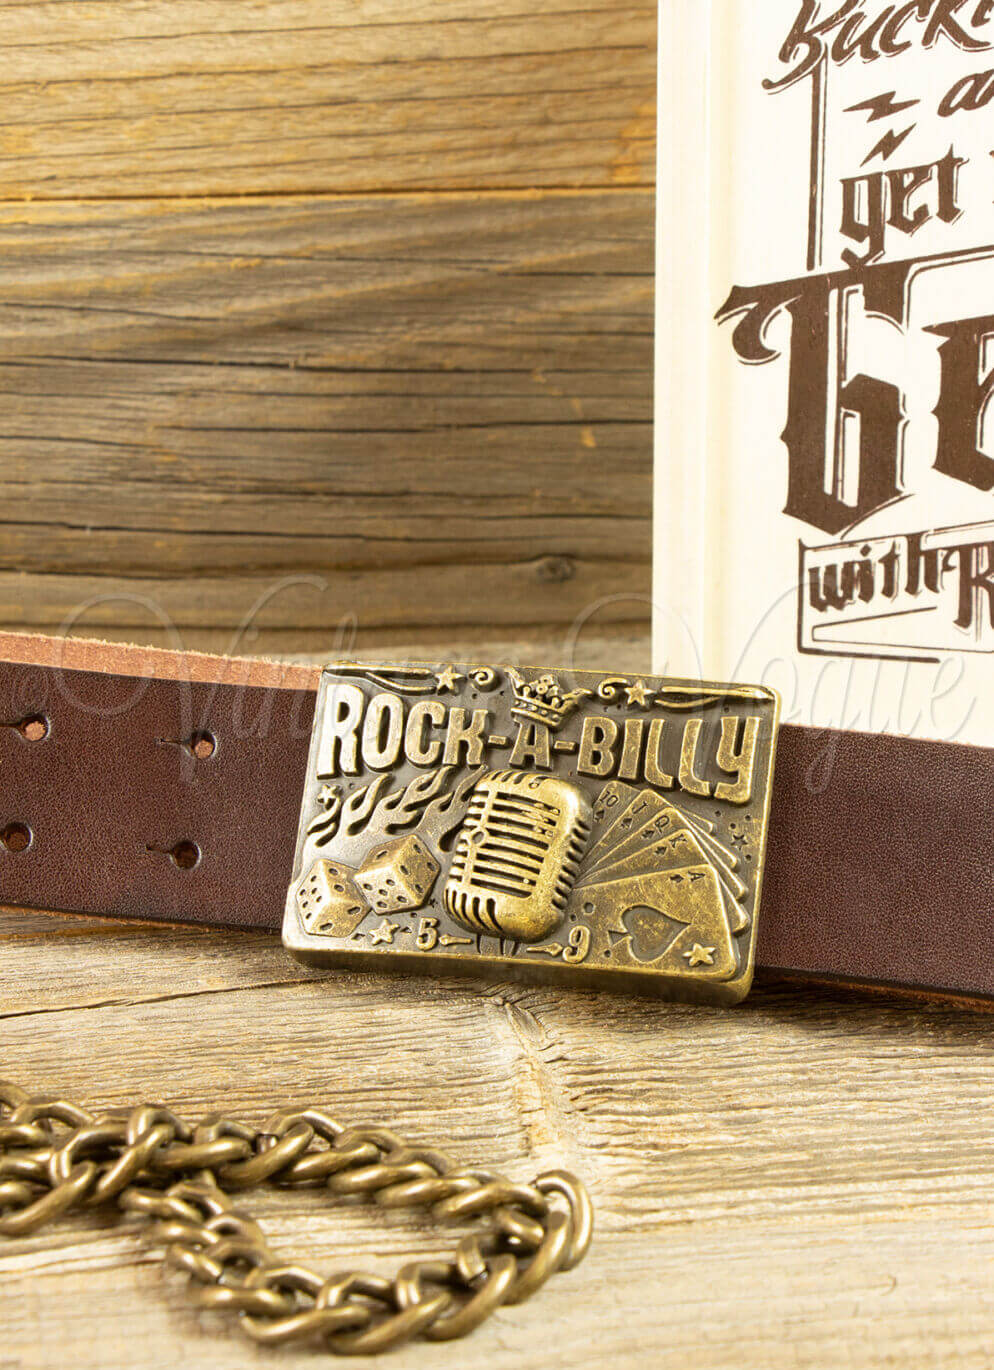 Rumble59 50er Jahre Rockabilly Retro Leder Gürtel mit Buckle Rockabilly